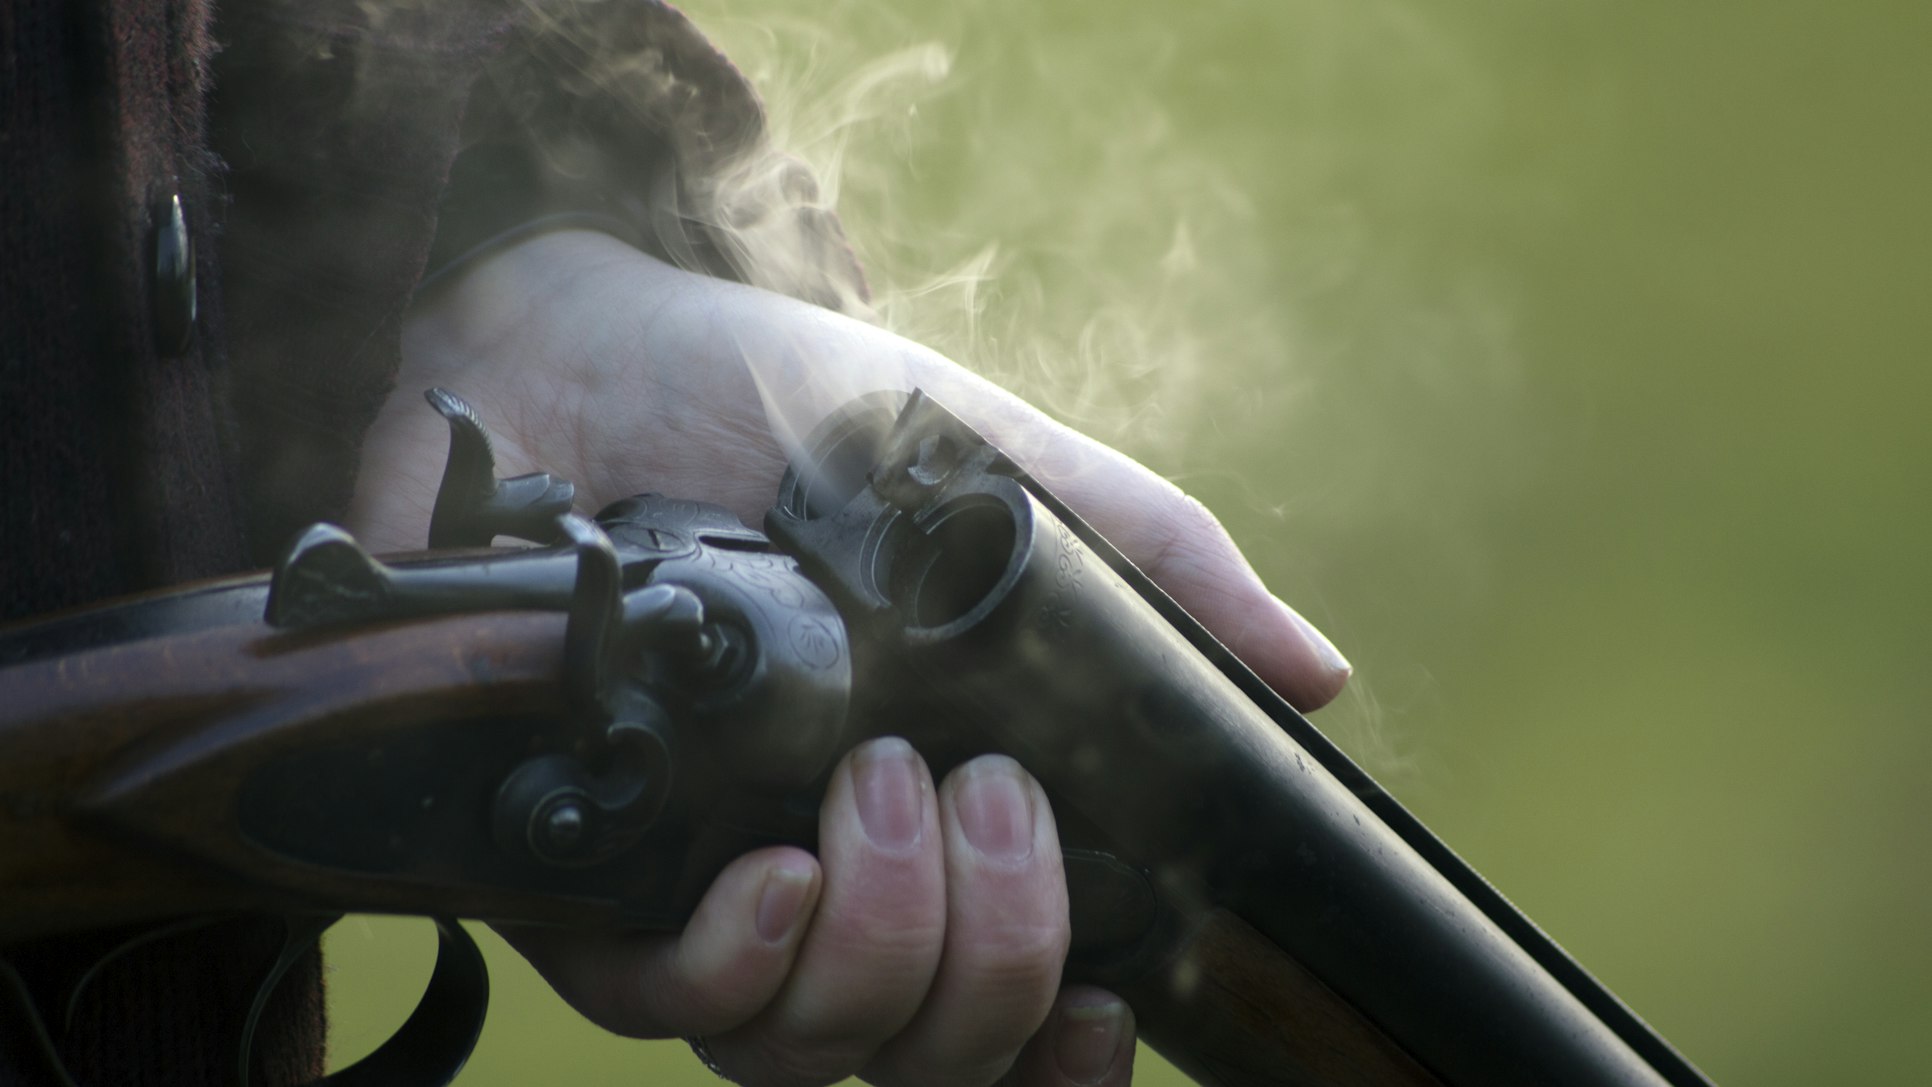 Конфликт между новыми знакомыми в Анжеро-Судженске обернулся стрельбой из охотничьего ружья